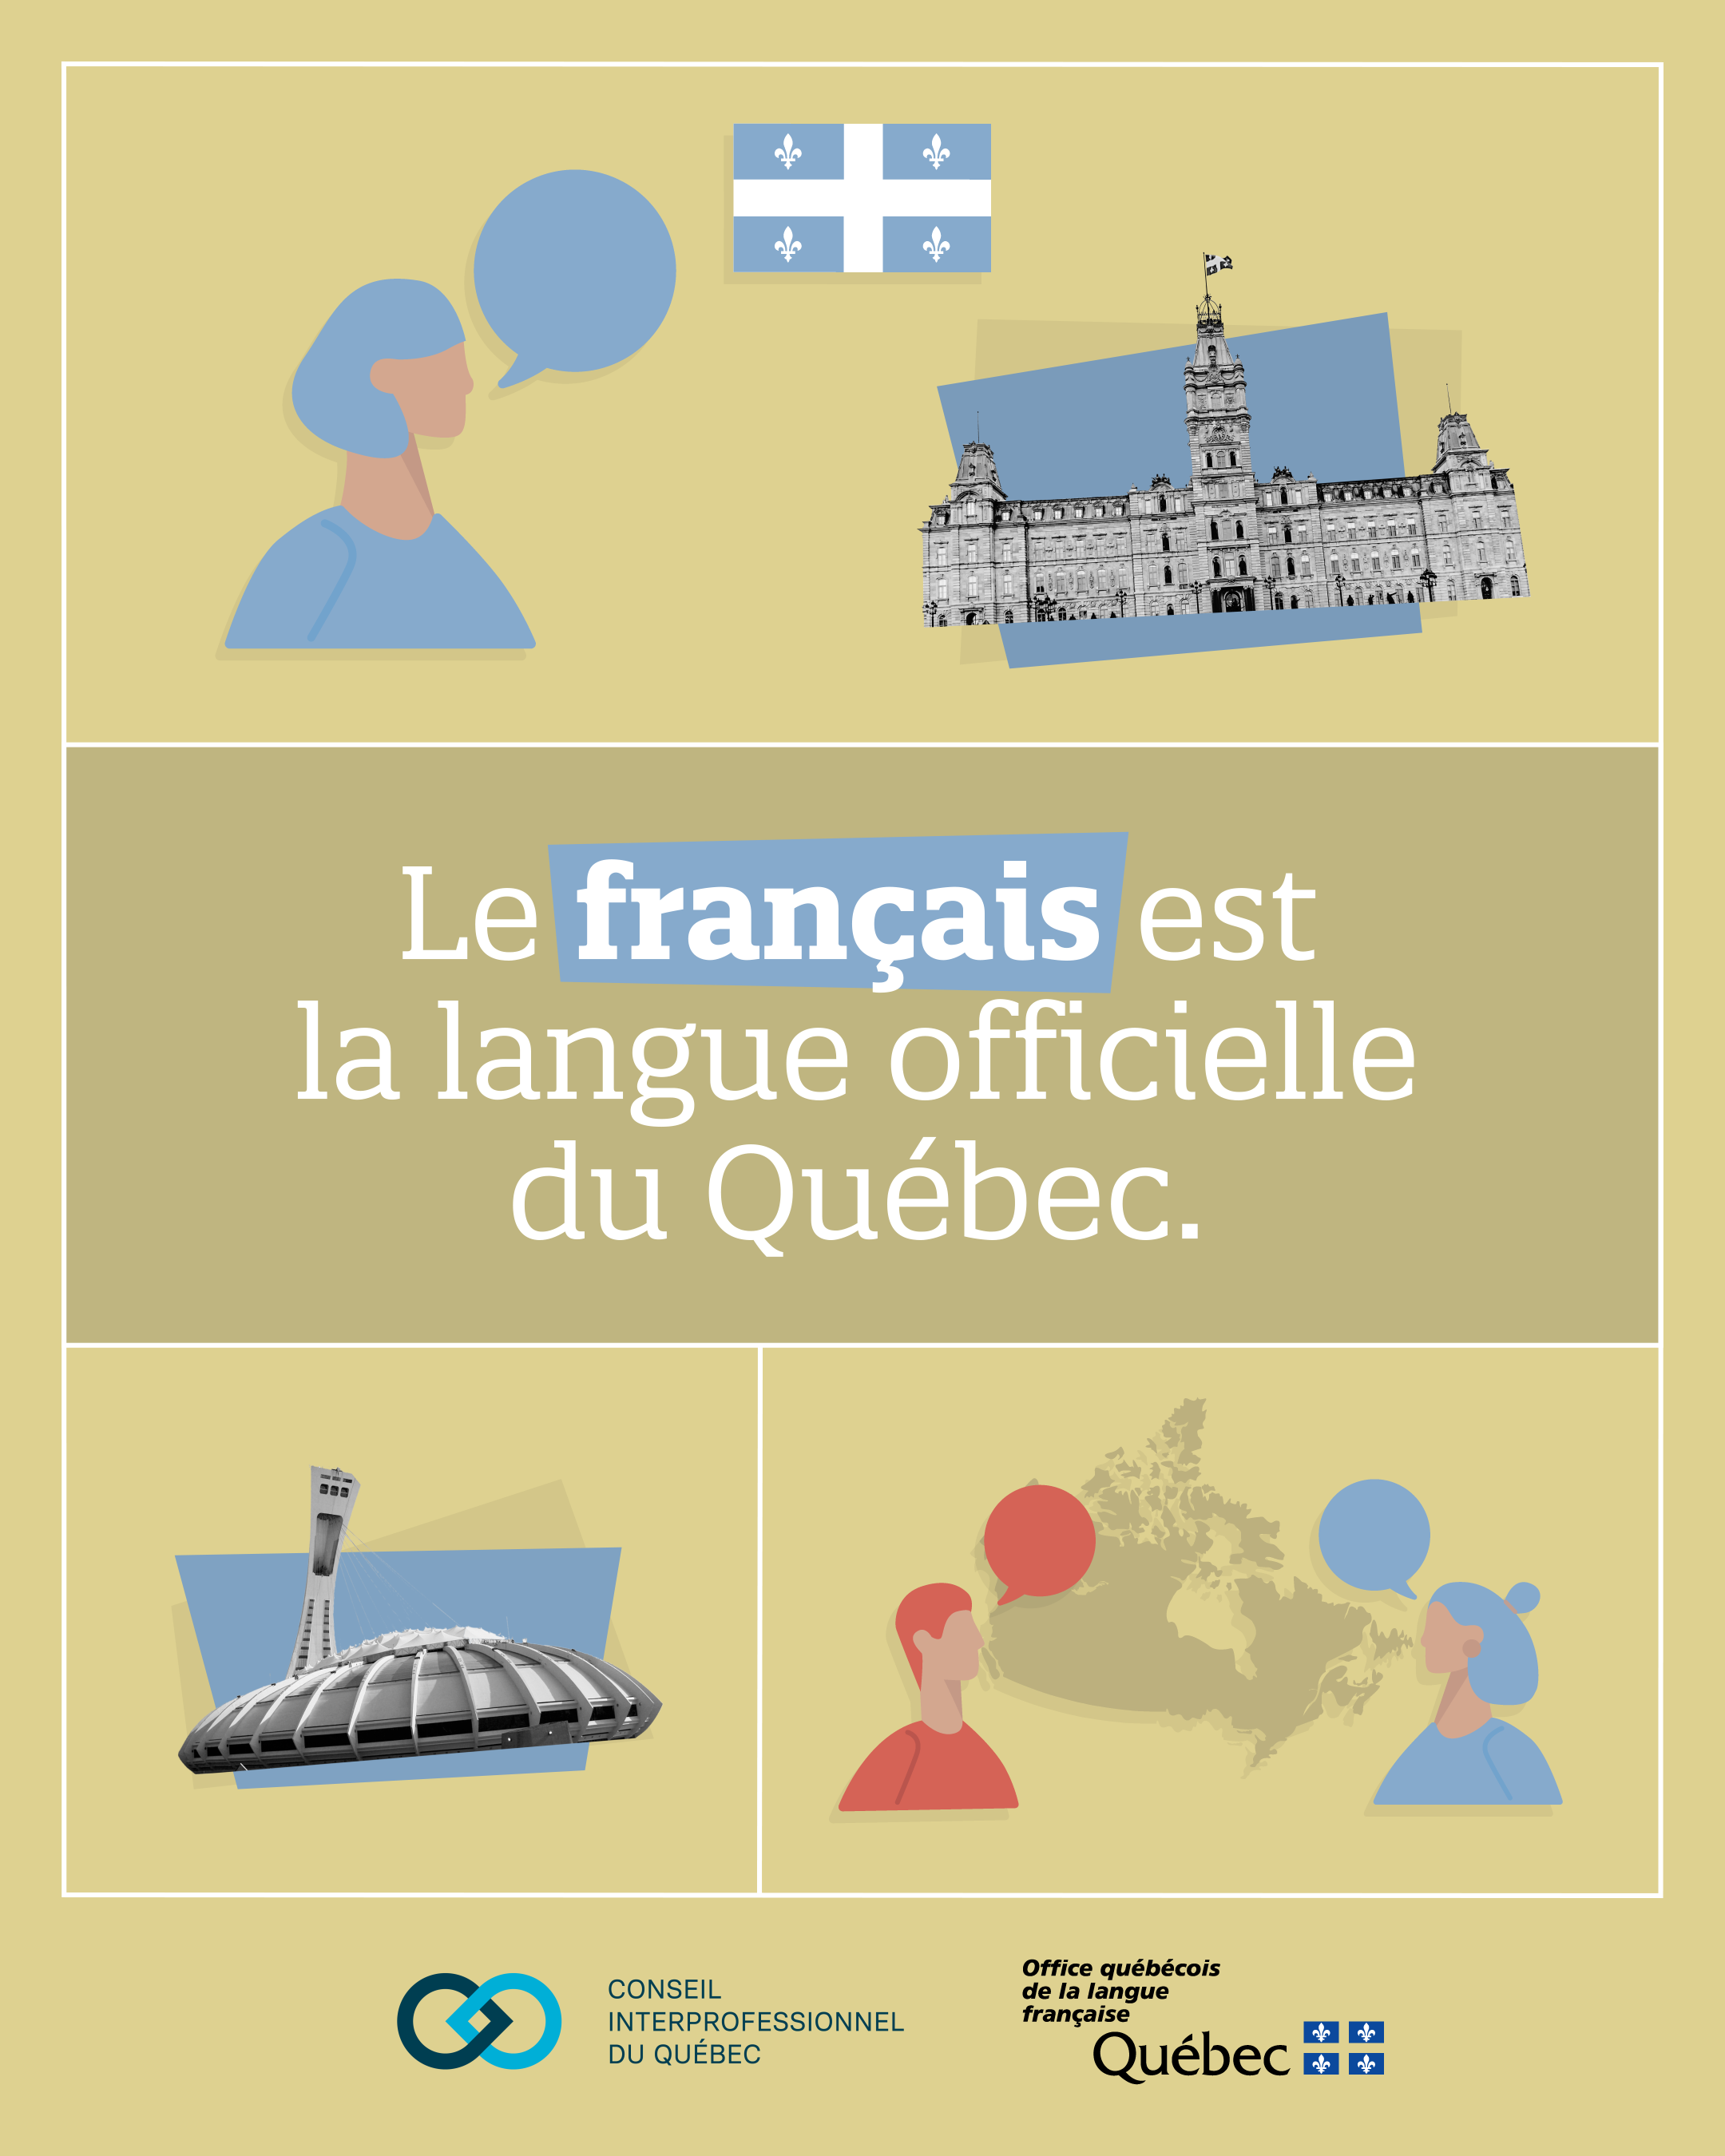 1. Le français est la langue officielle du Québec.